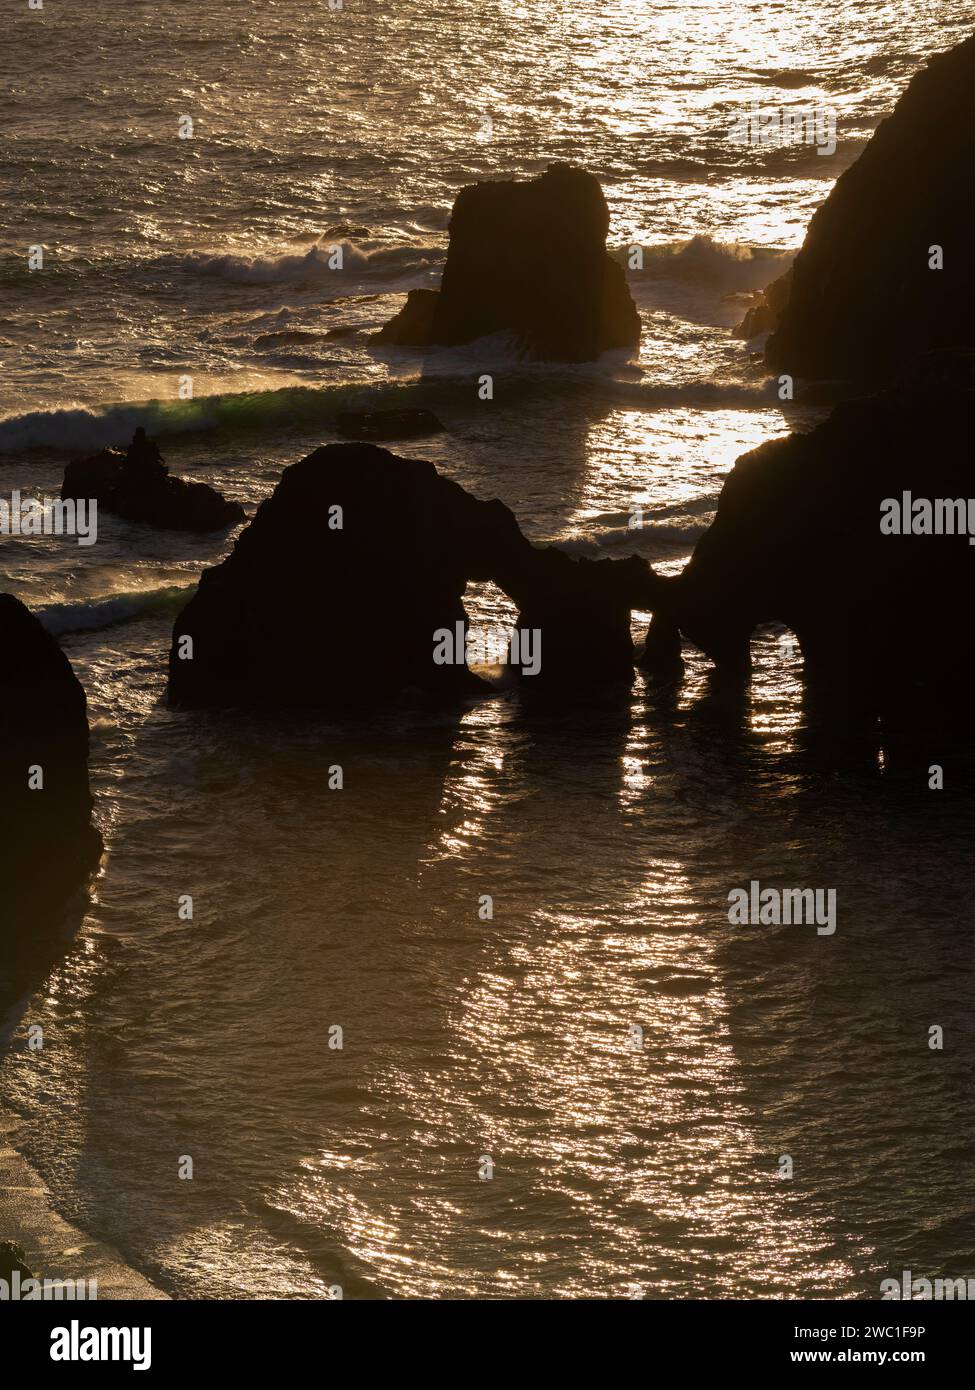 Sea arches, Mendocino County, California Stock Photo